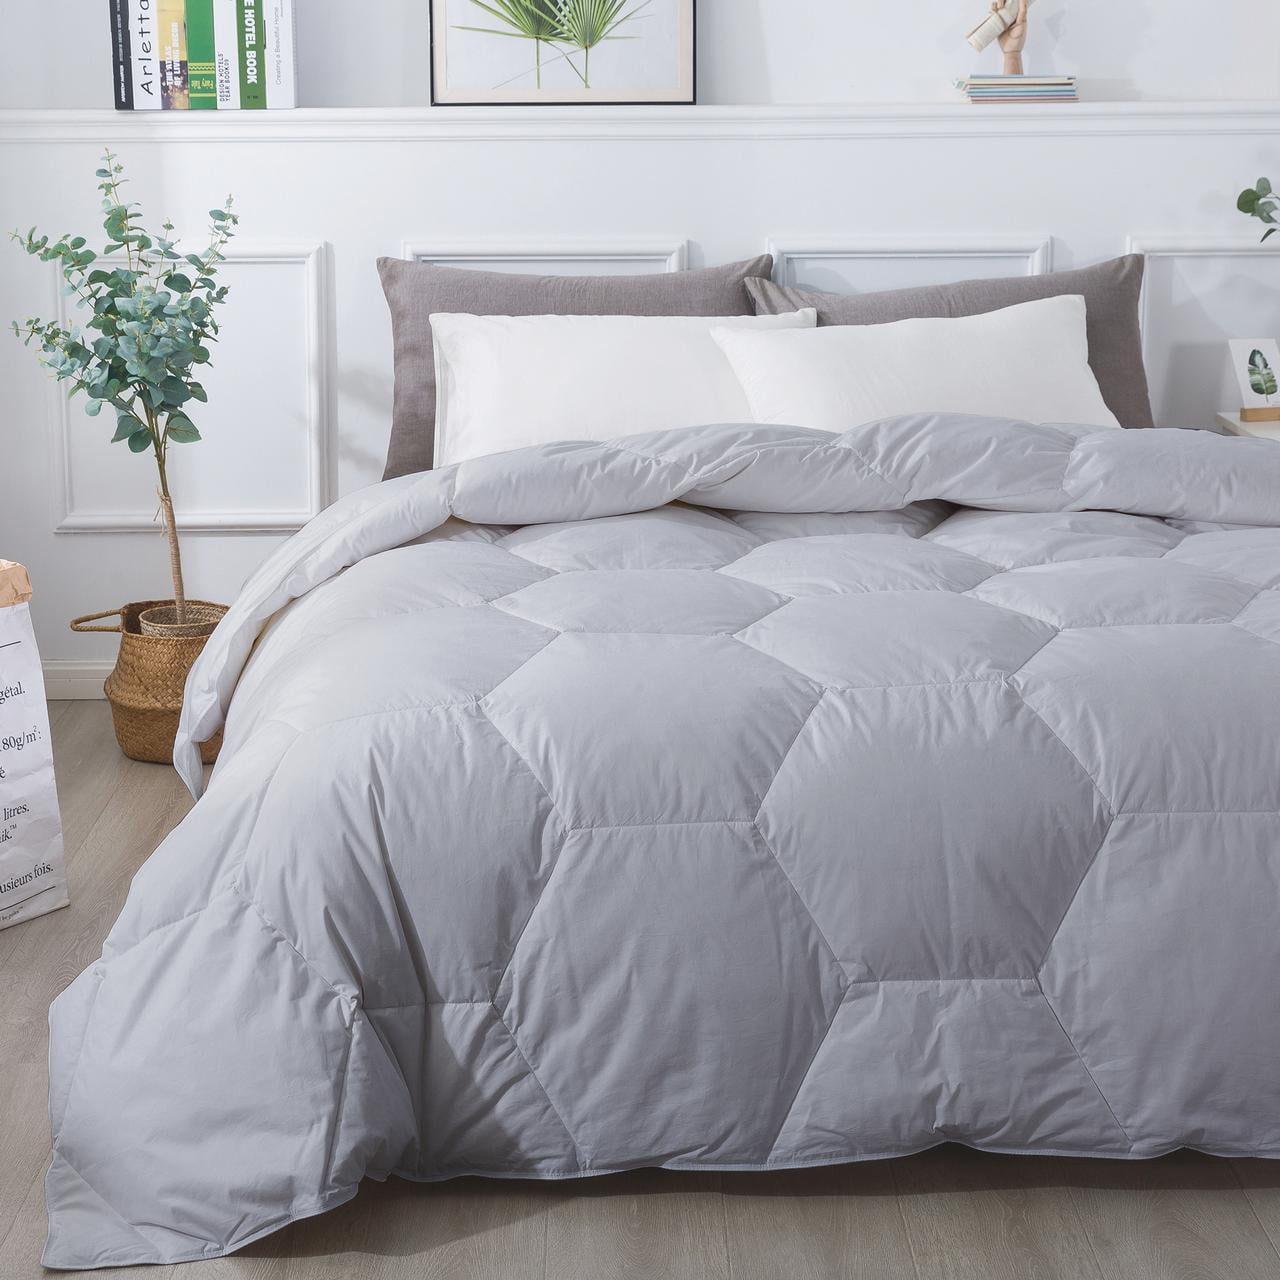 Details about   Luxury Cotton Quilt Duvet Blanket Super Warm Thicken Stitching  Cotton Comforter 